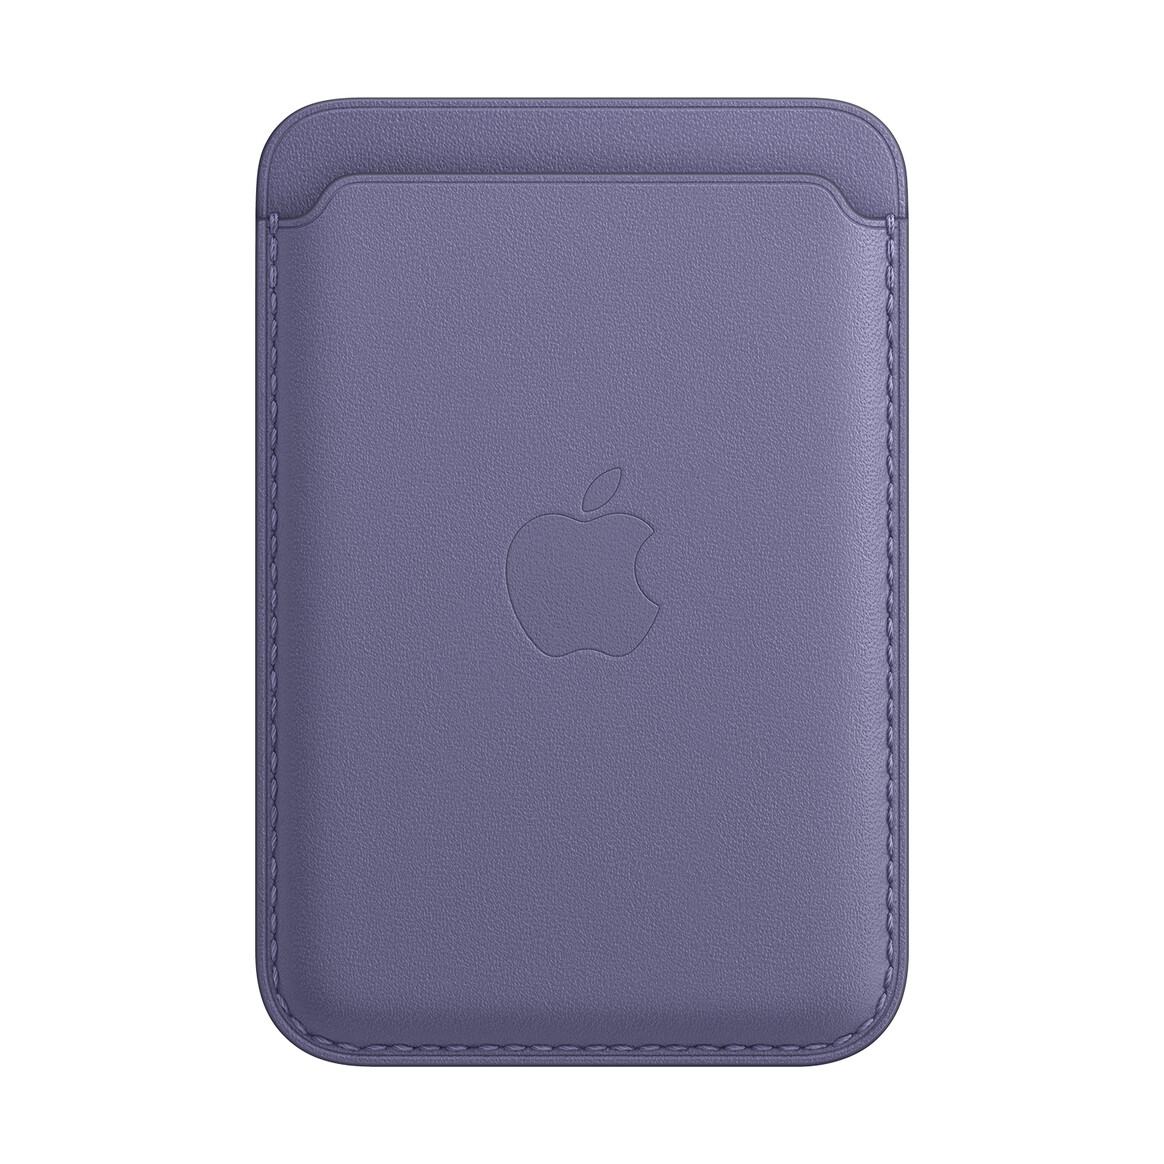 <h1>Apple iPhone Leder Wallet mit MagSafe, wisteria</h1>